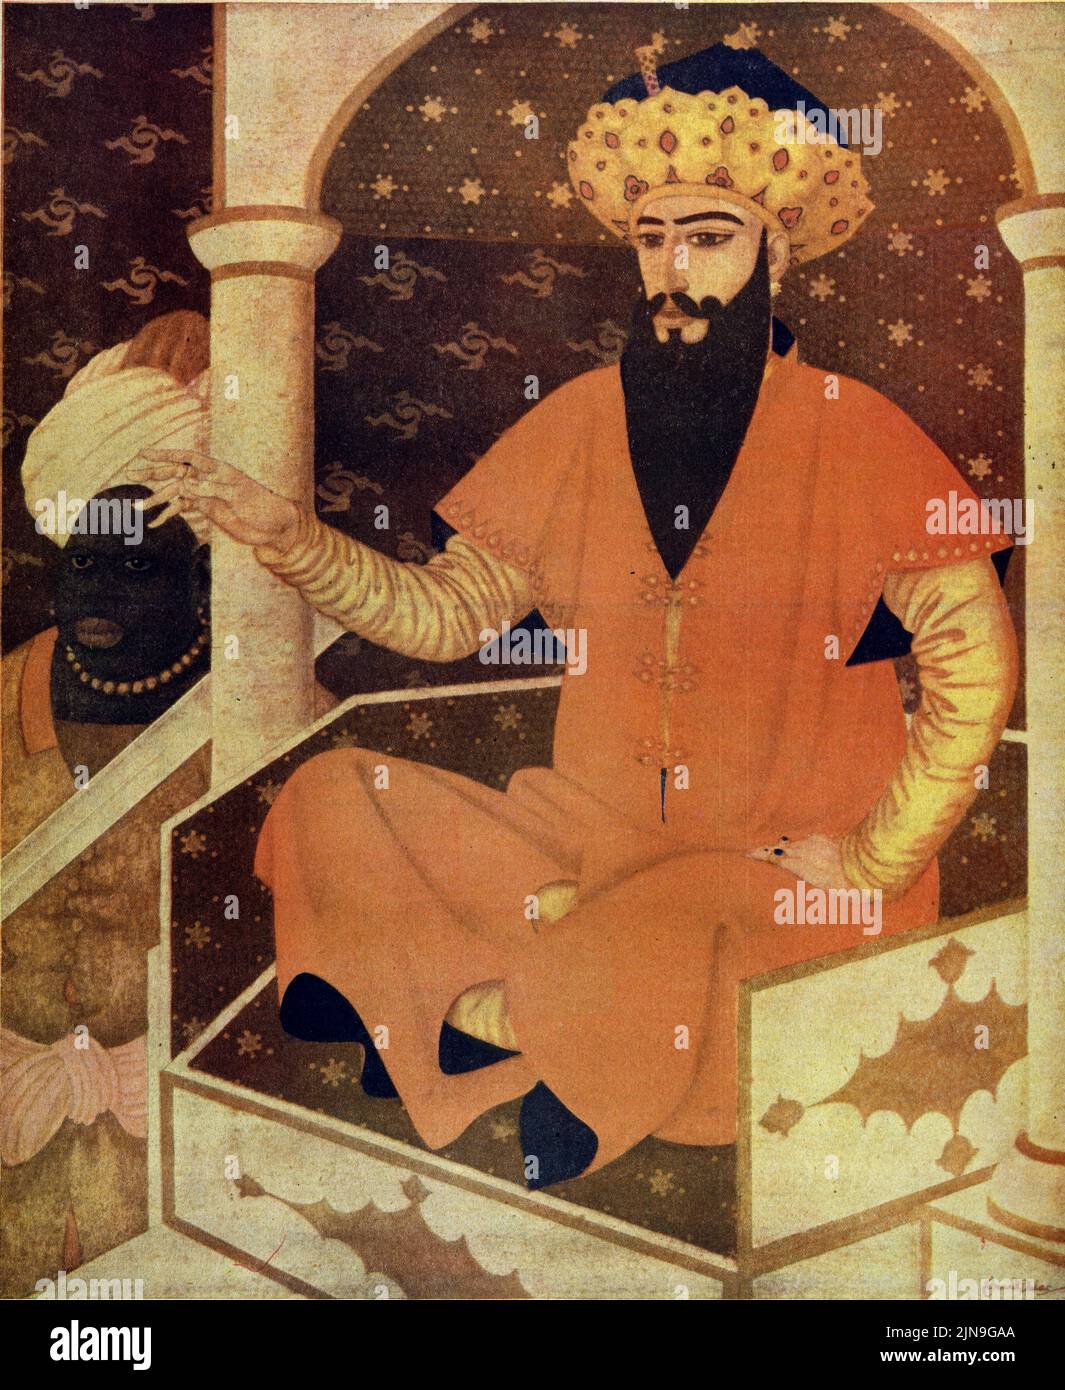 « The Caliph Haroun Al Raschid » sur 29 mars 1925 dans le magazine American Weekly peint par Edmund Dulac comme les « personnages des Arabian Nights ». Banque D'Images